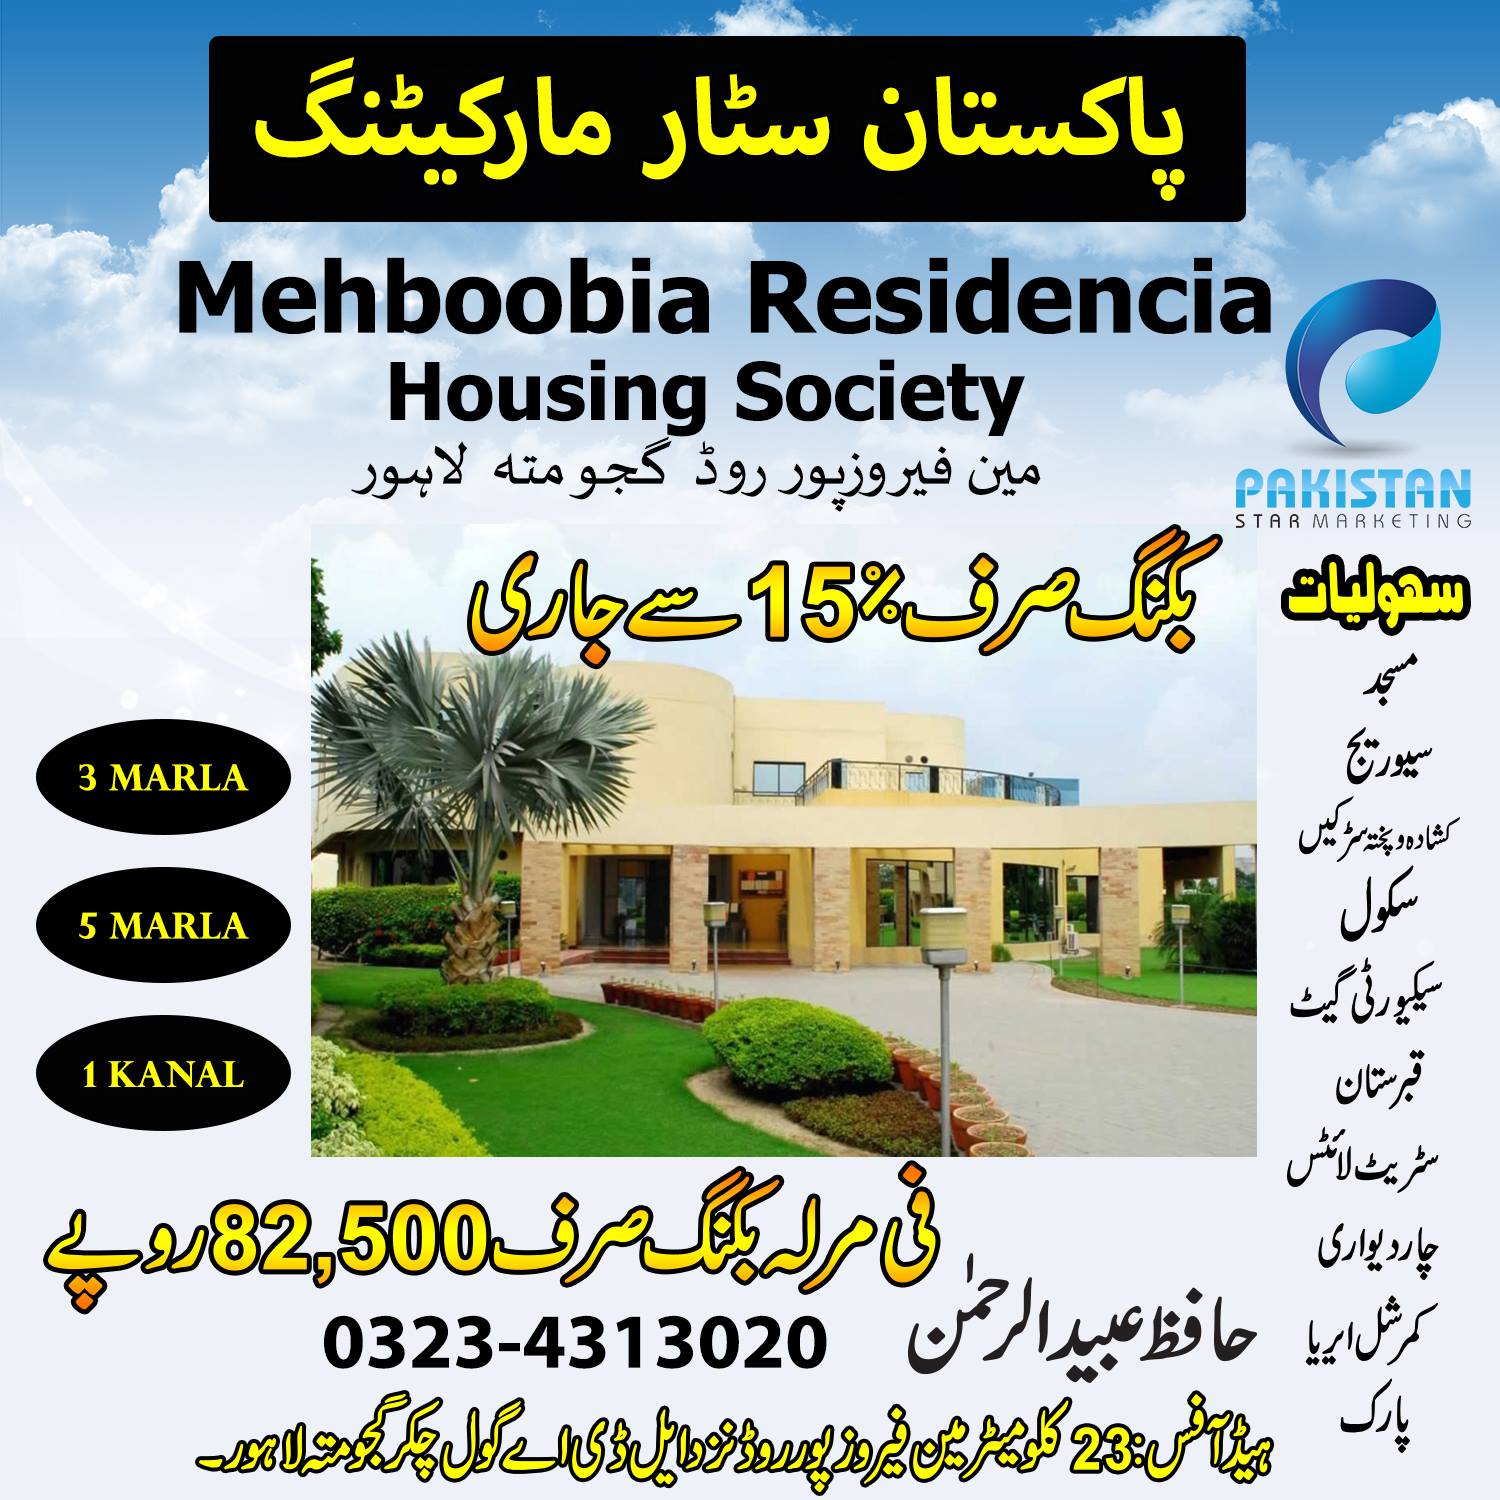 5 Marla Plot for Sale, Mehboobia Housing Scheme Lahore